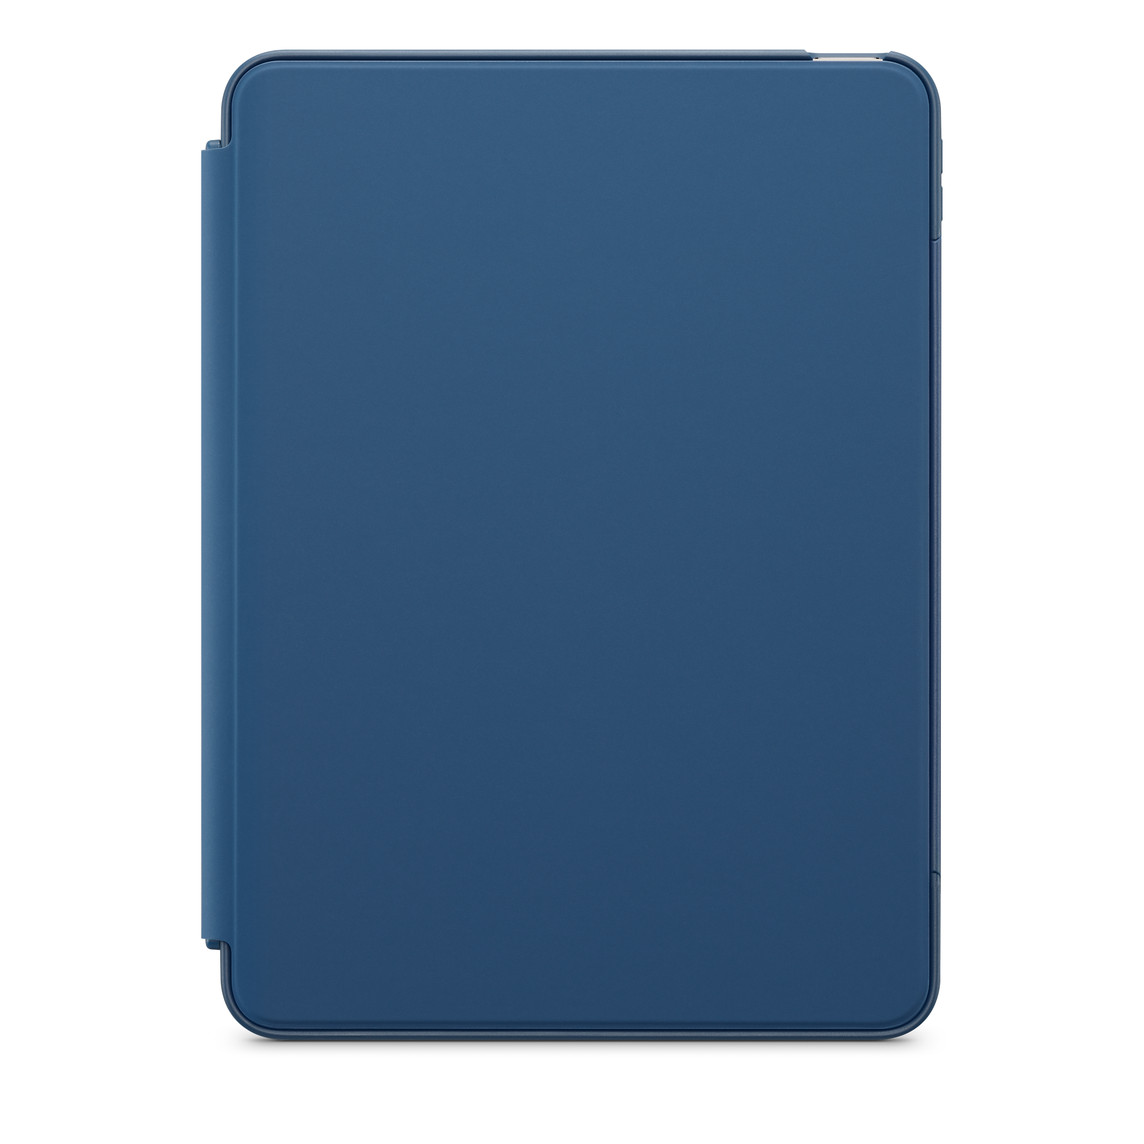 Yderside vist forfra, cover dækker iPad Air i etui